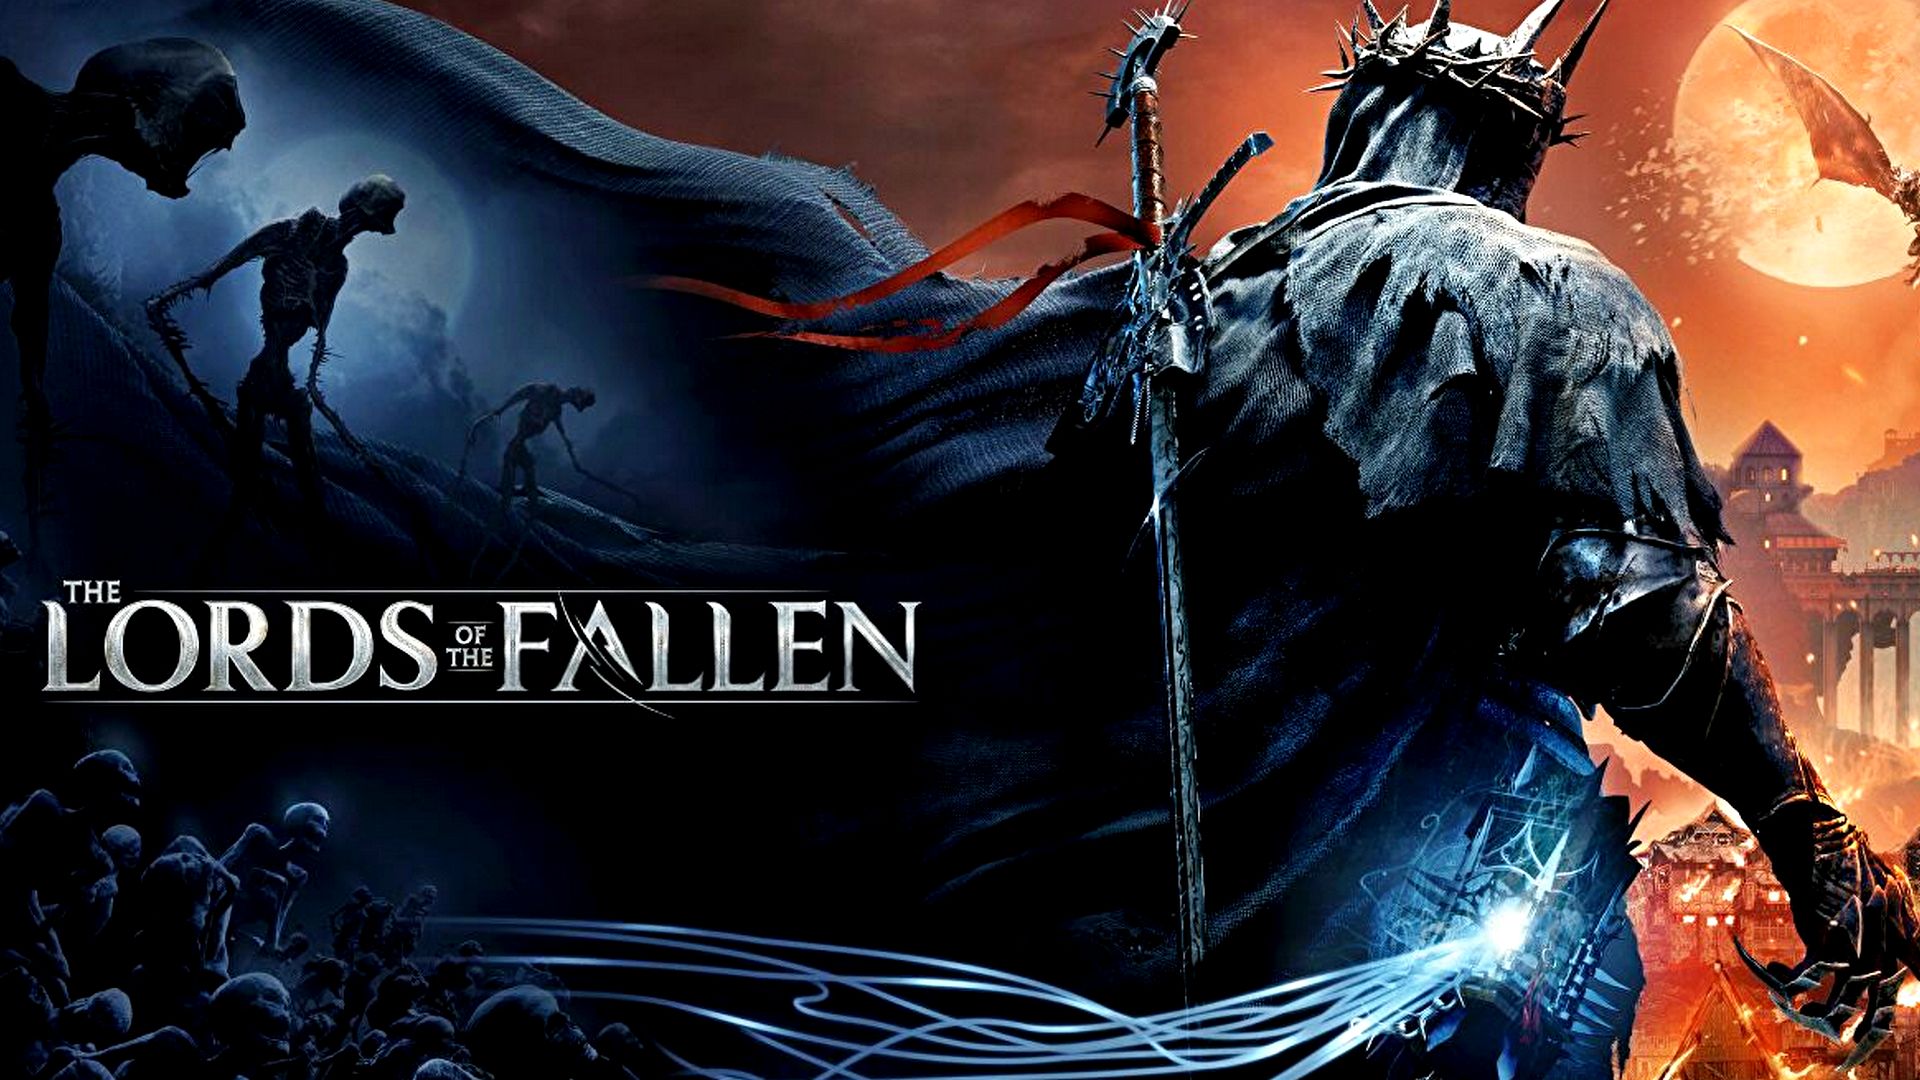 Bilder zu The Lords of the Fallen mit Cinematic Trailer angekündigt, ist ein Reboot